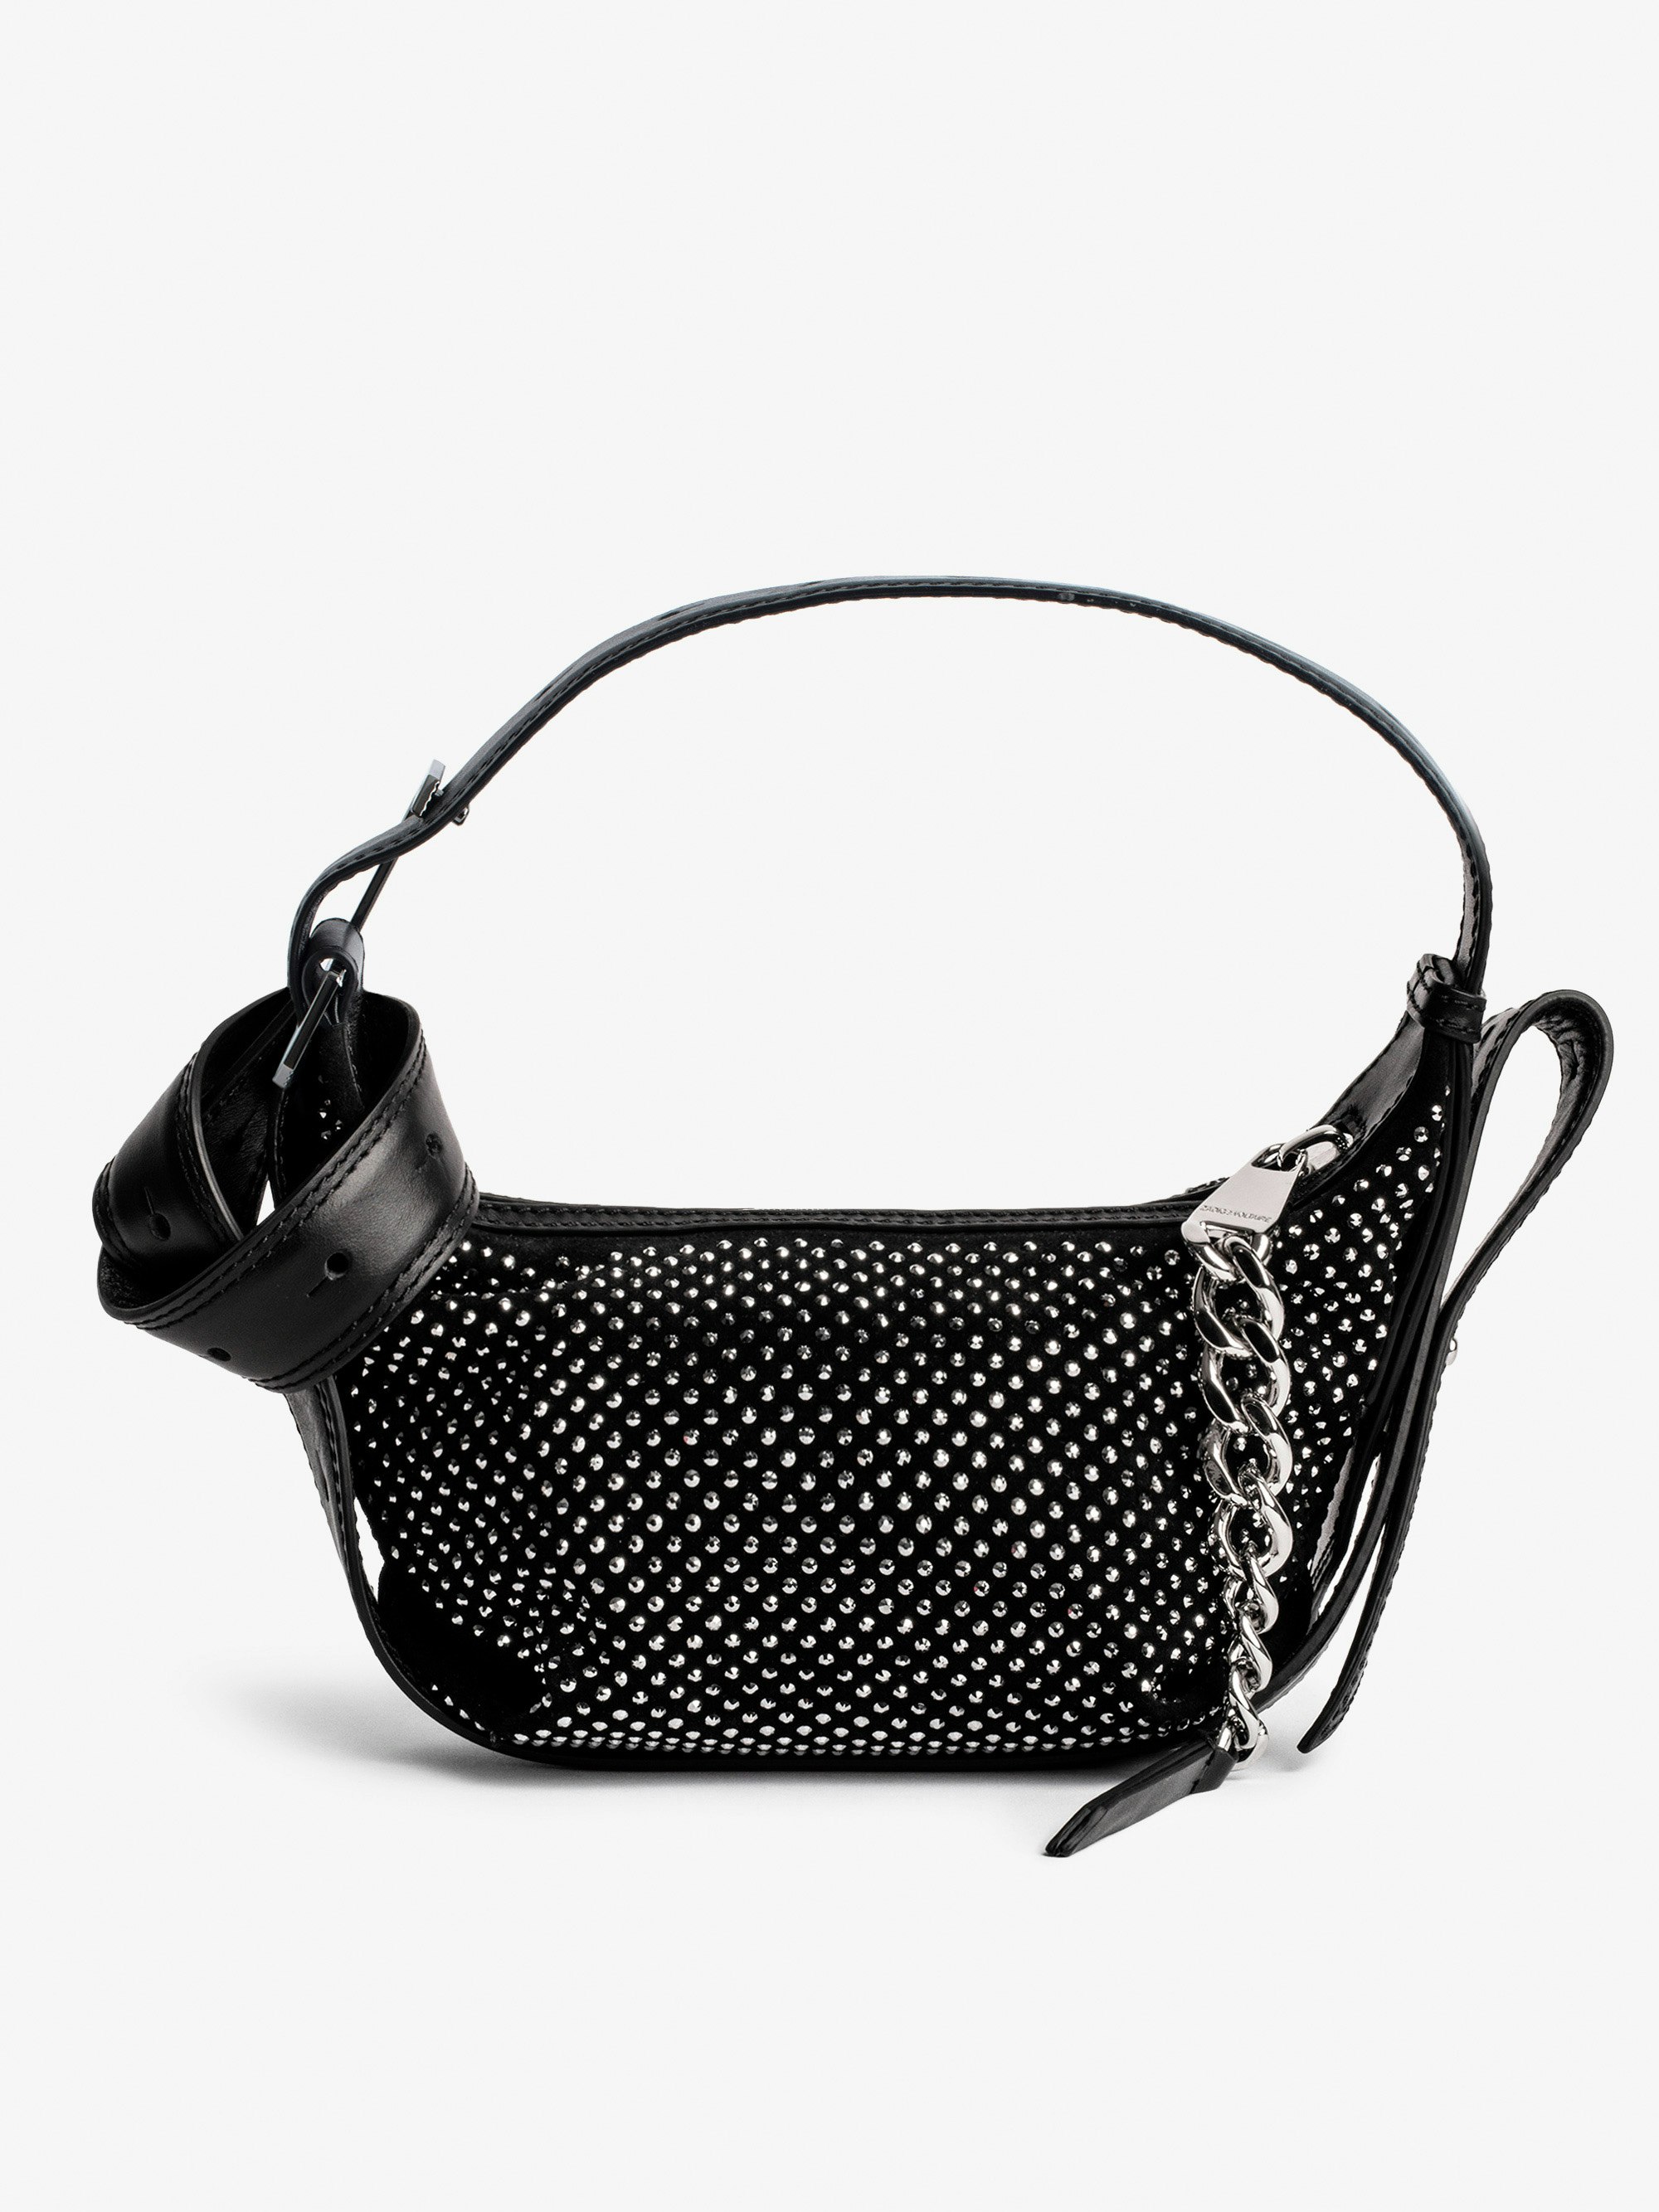 Handtasche Le Cecilia XS Strass - Schultertasche aus schwarzem Wildleder mit Strasssteinen. Mit dem Kauf dieses Produkts unterstützen Sie eine verantwortungsvolle Lederproduktion gemäß der Leather Working Group.